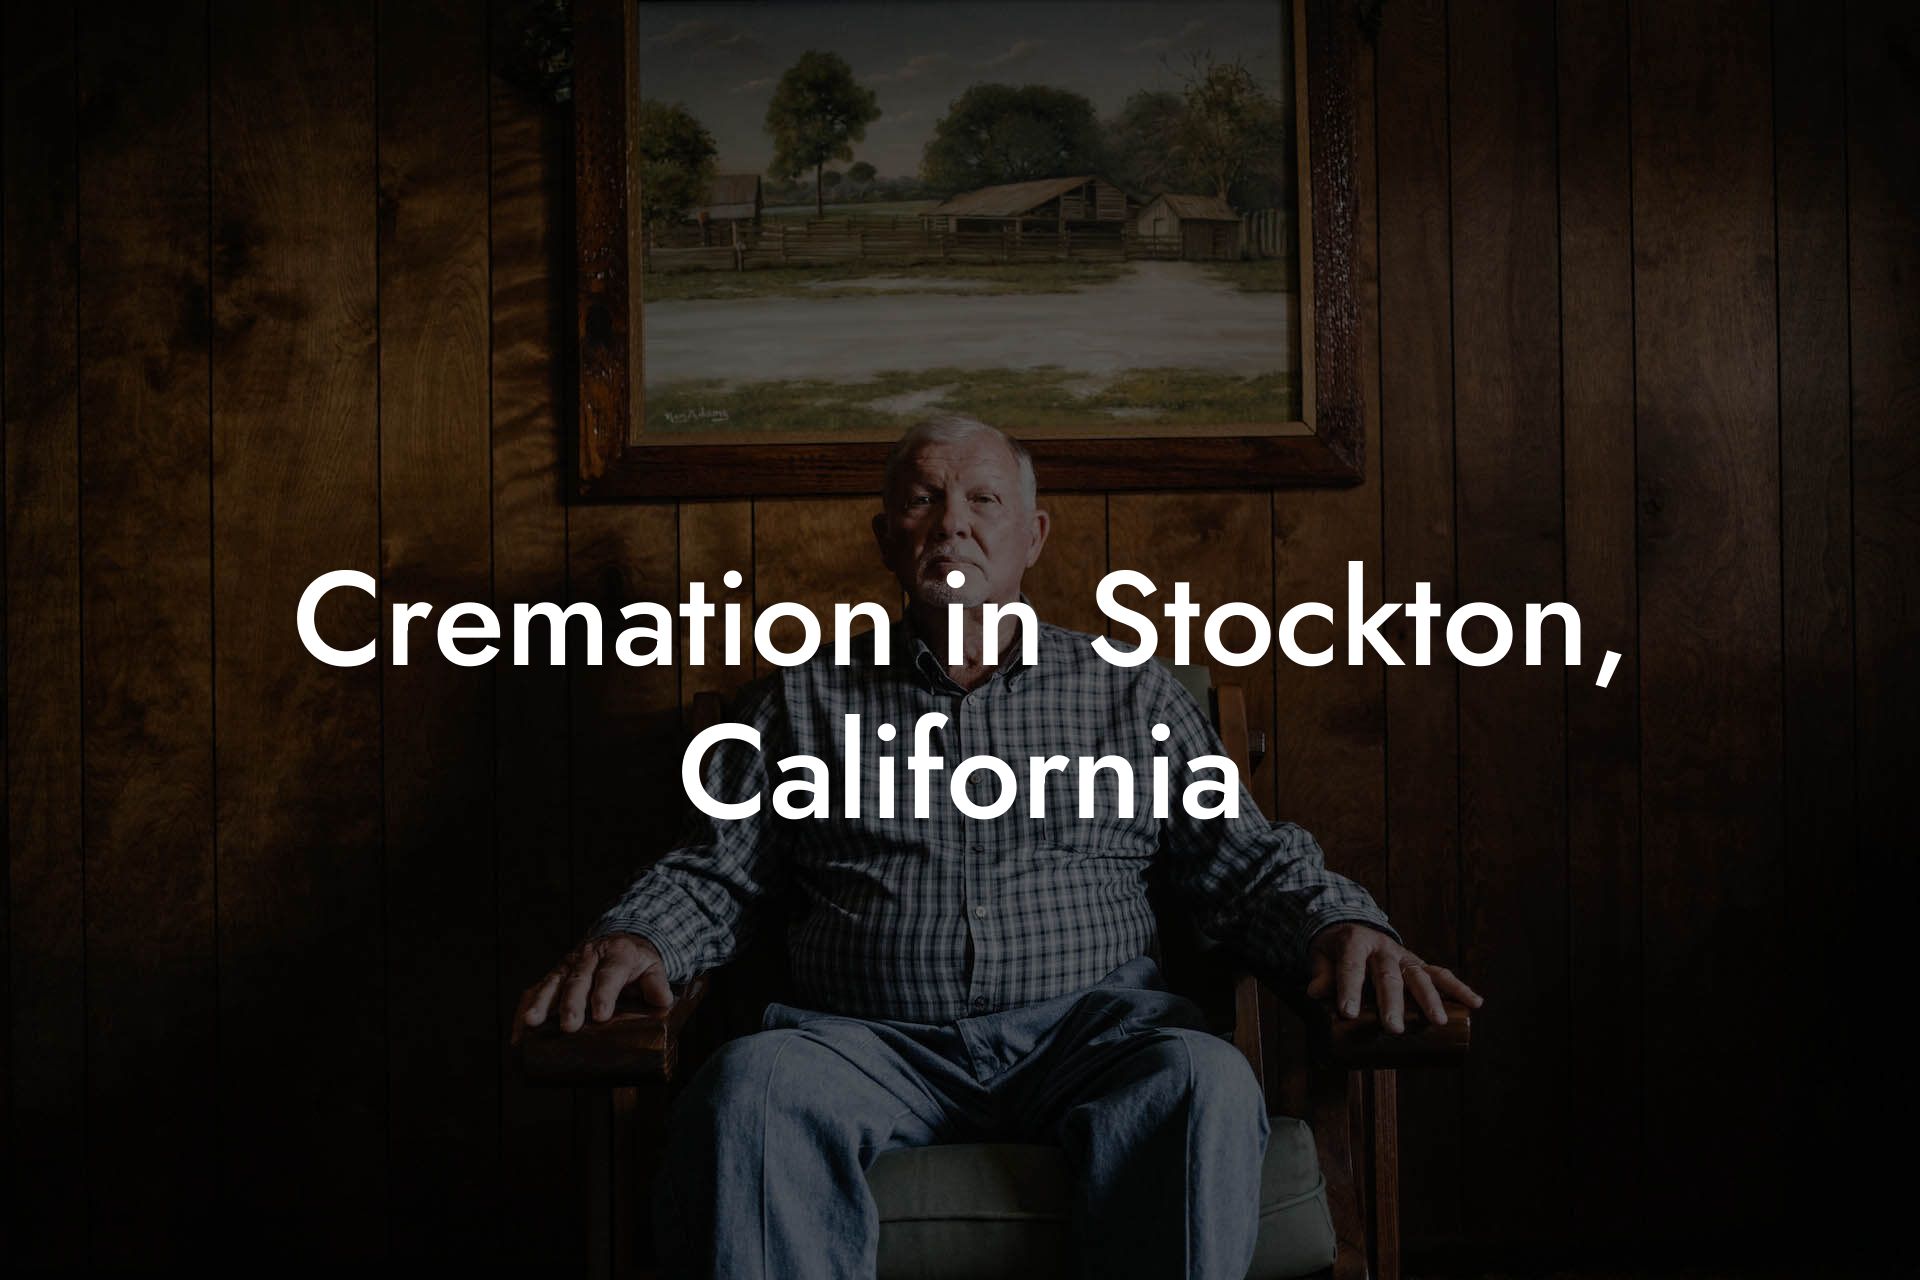 Cremation in Stockton, California